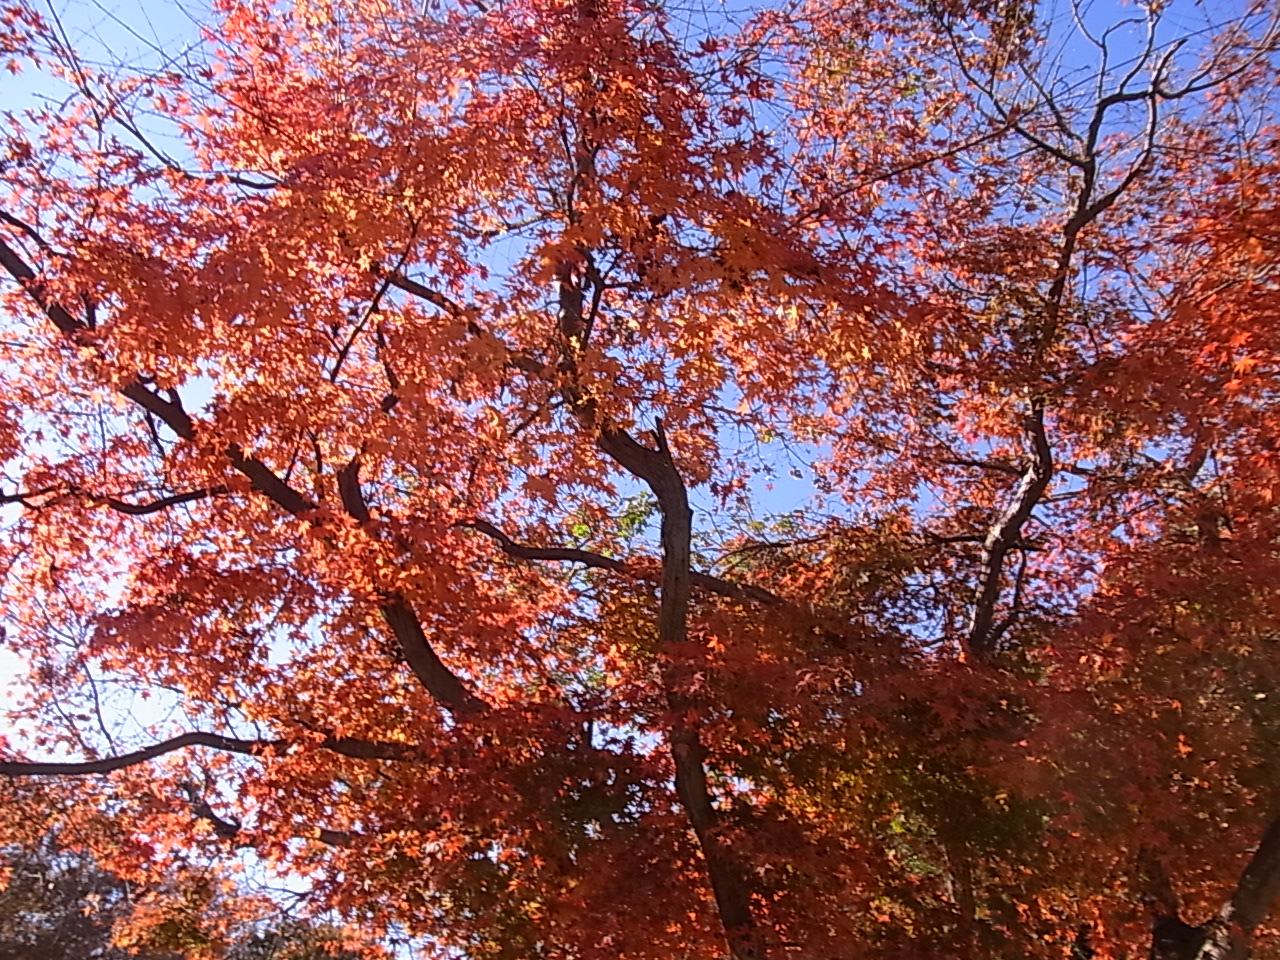 紅葉した木